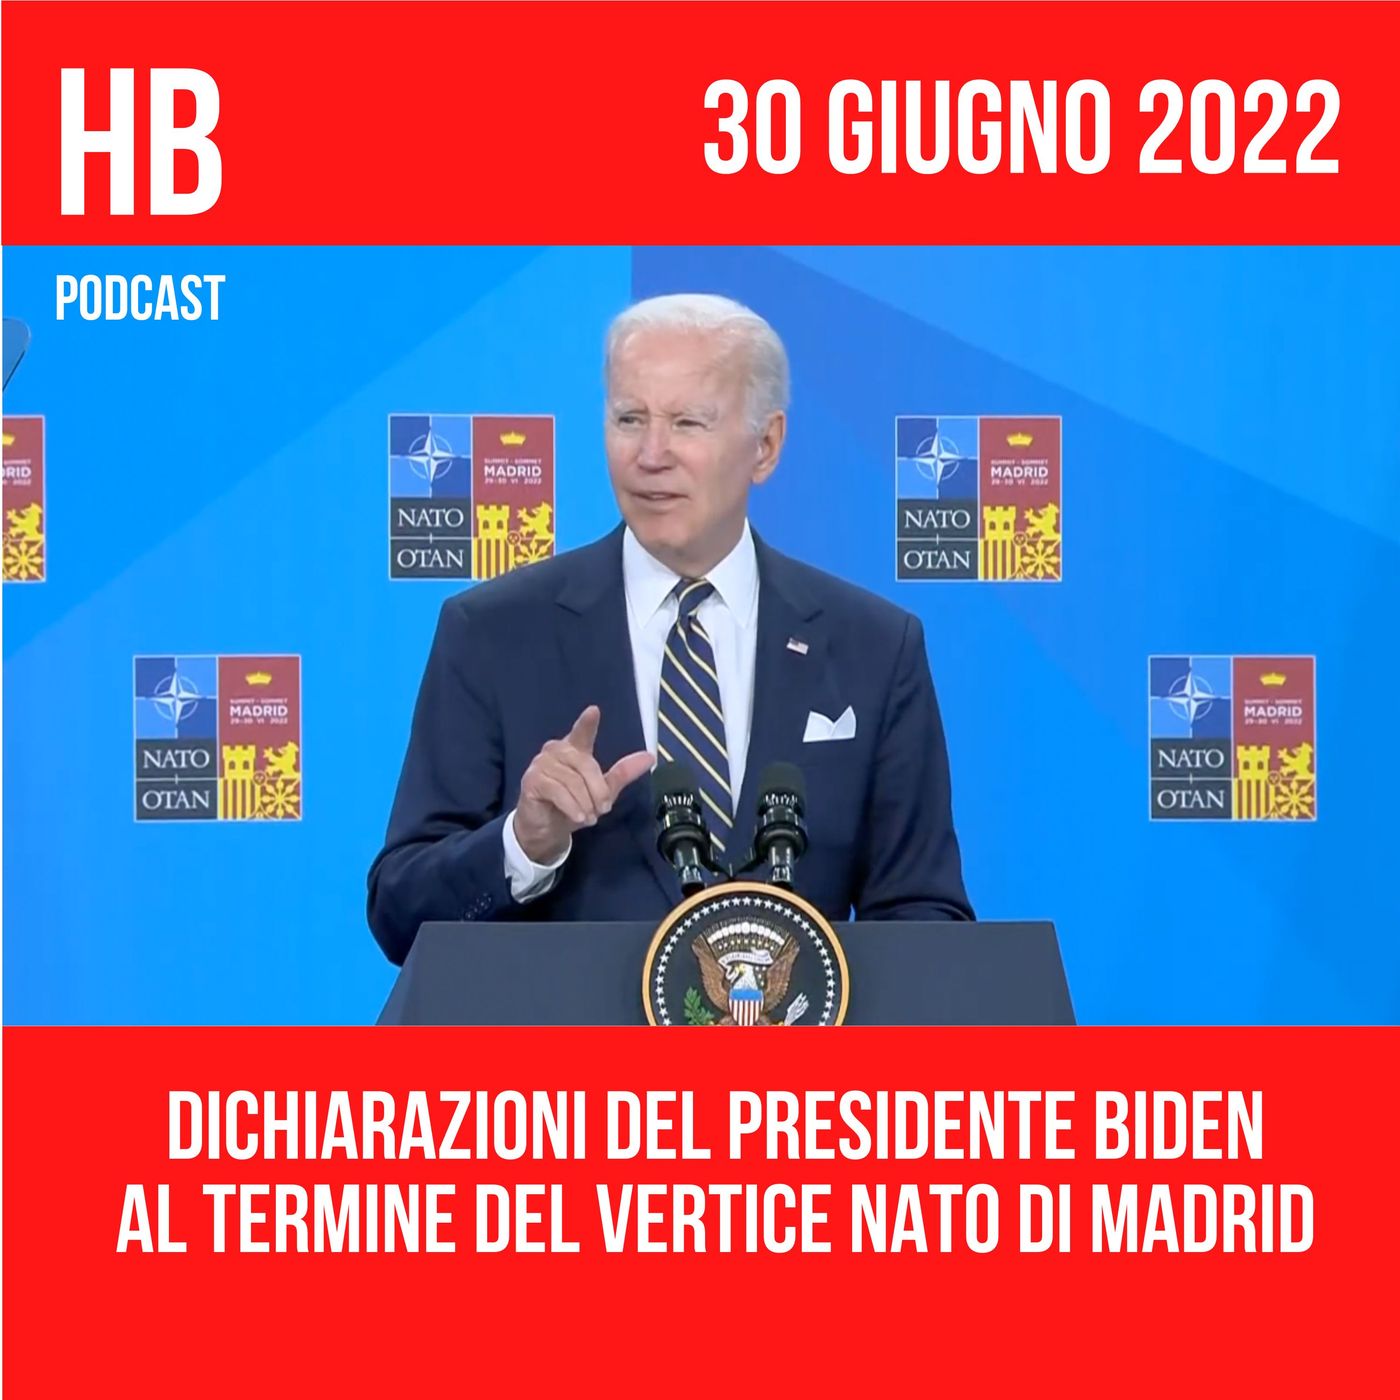 Le dichiarazioni del Presidente Biden al termine del vertice NATO di Madrid